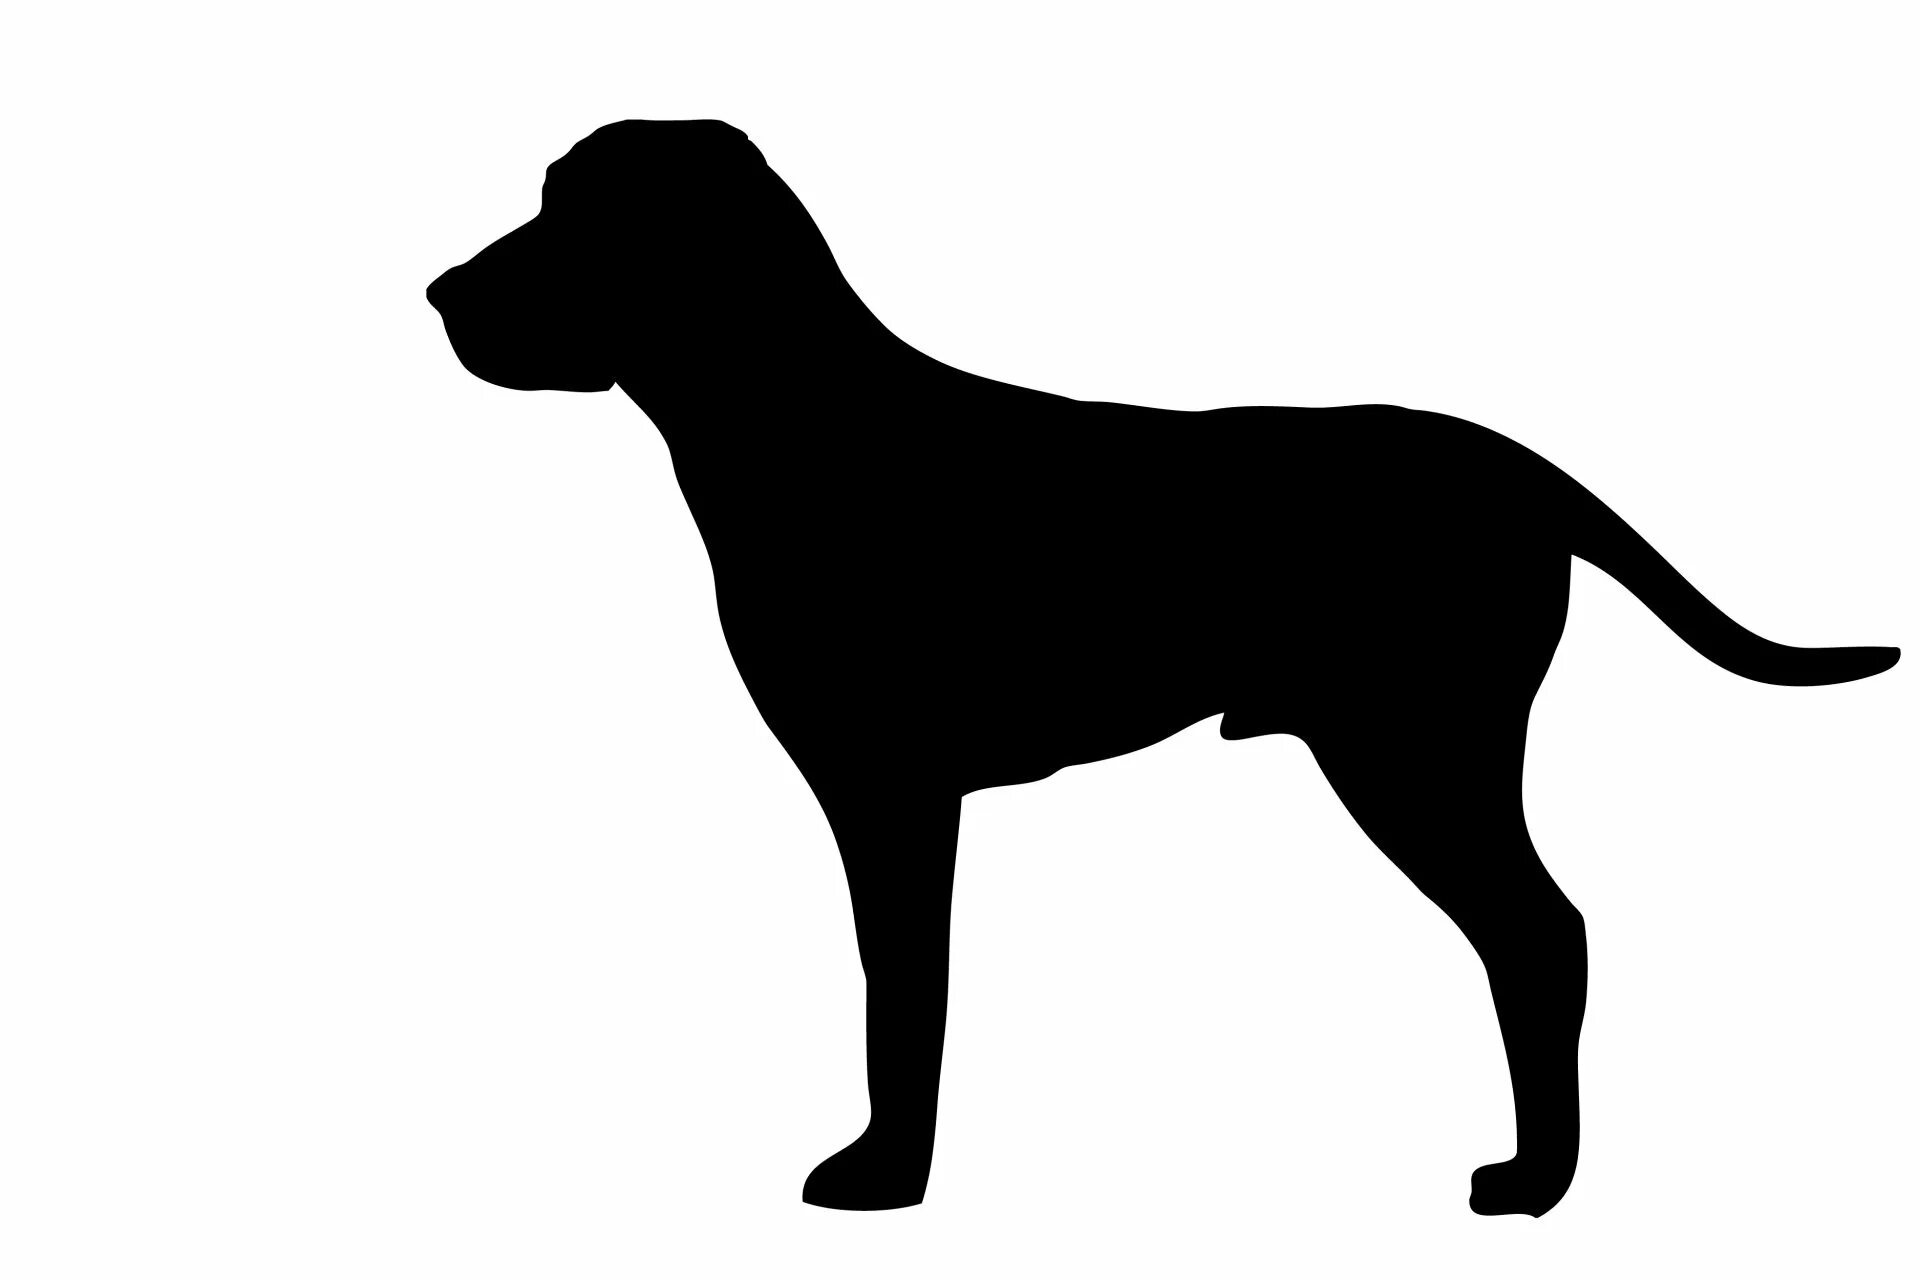 Рисунки черных собак